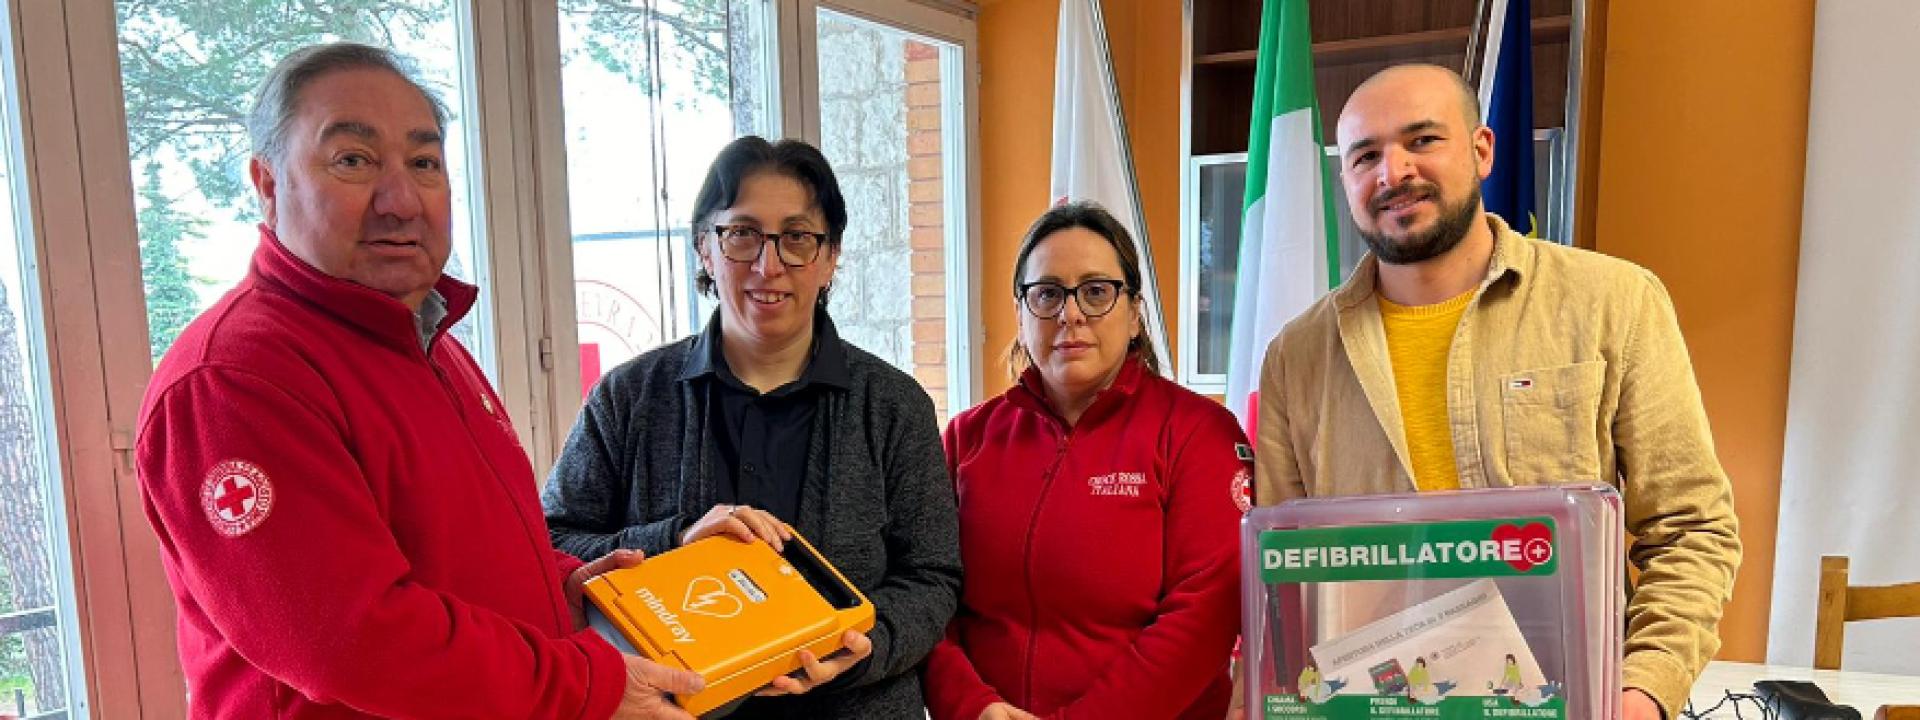 Marche - Un defibrillatore donato dalla Cri al Comune di Bolognola